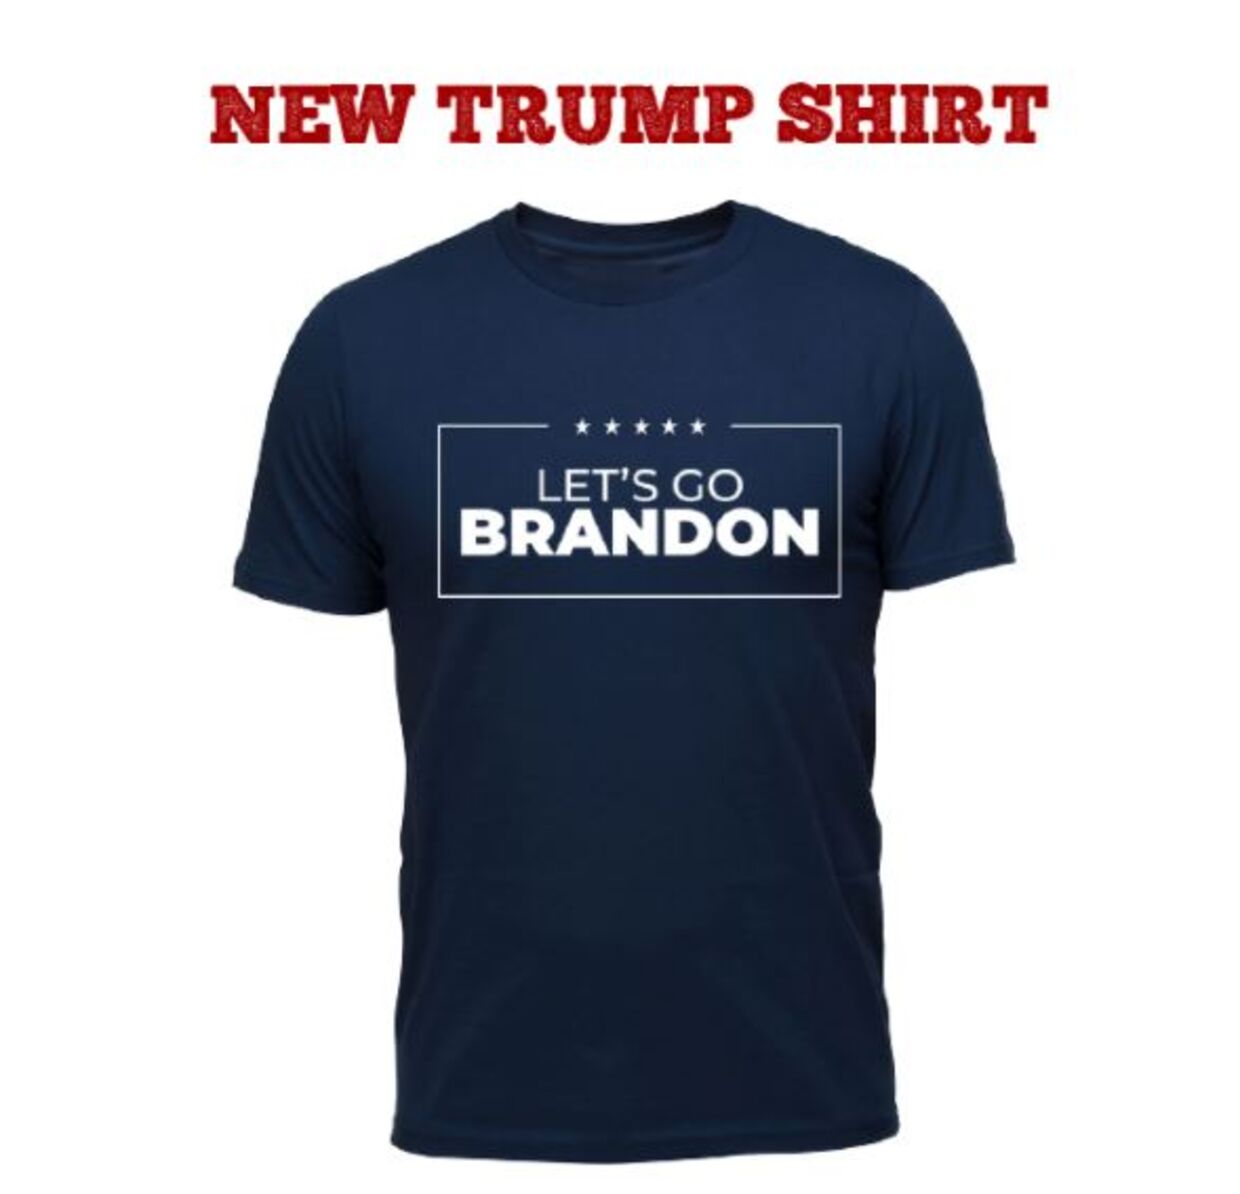 Sådan ser en af de T-shirts med 'Let's go Brandon', som man kan få via Donald Trumps Save America Pac-organisation.